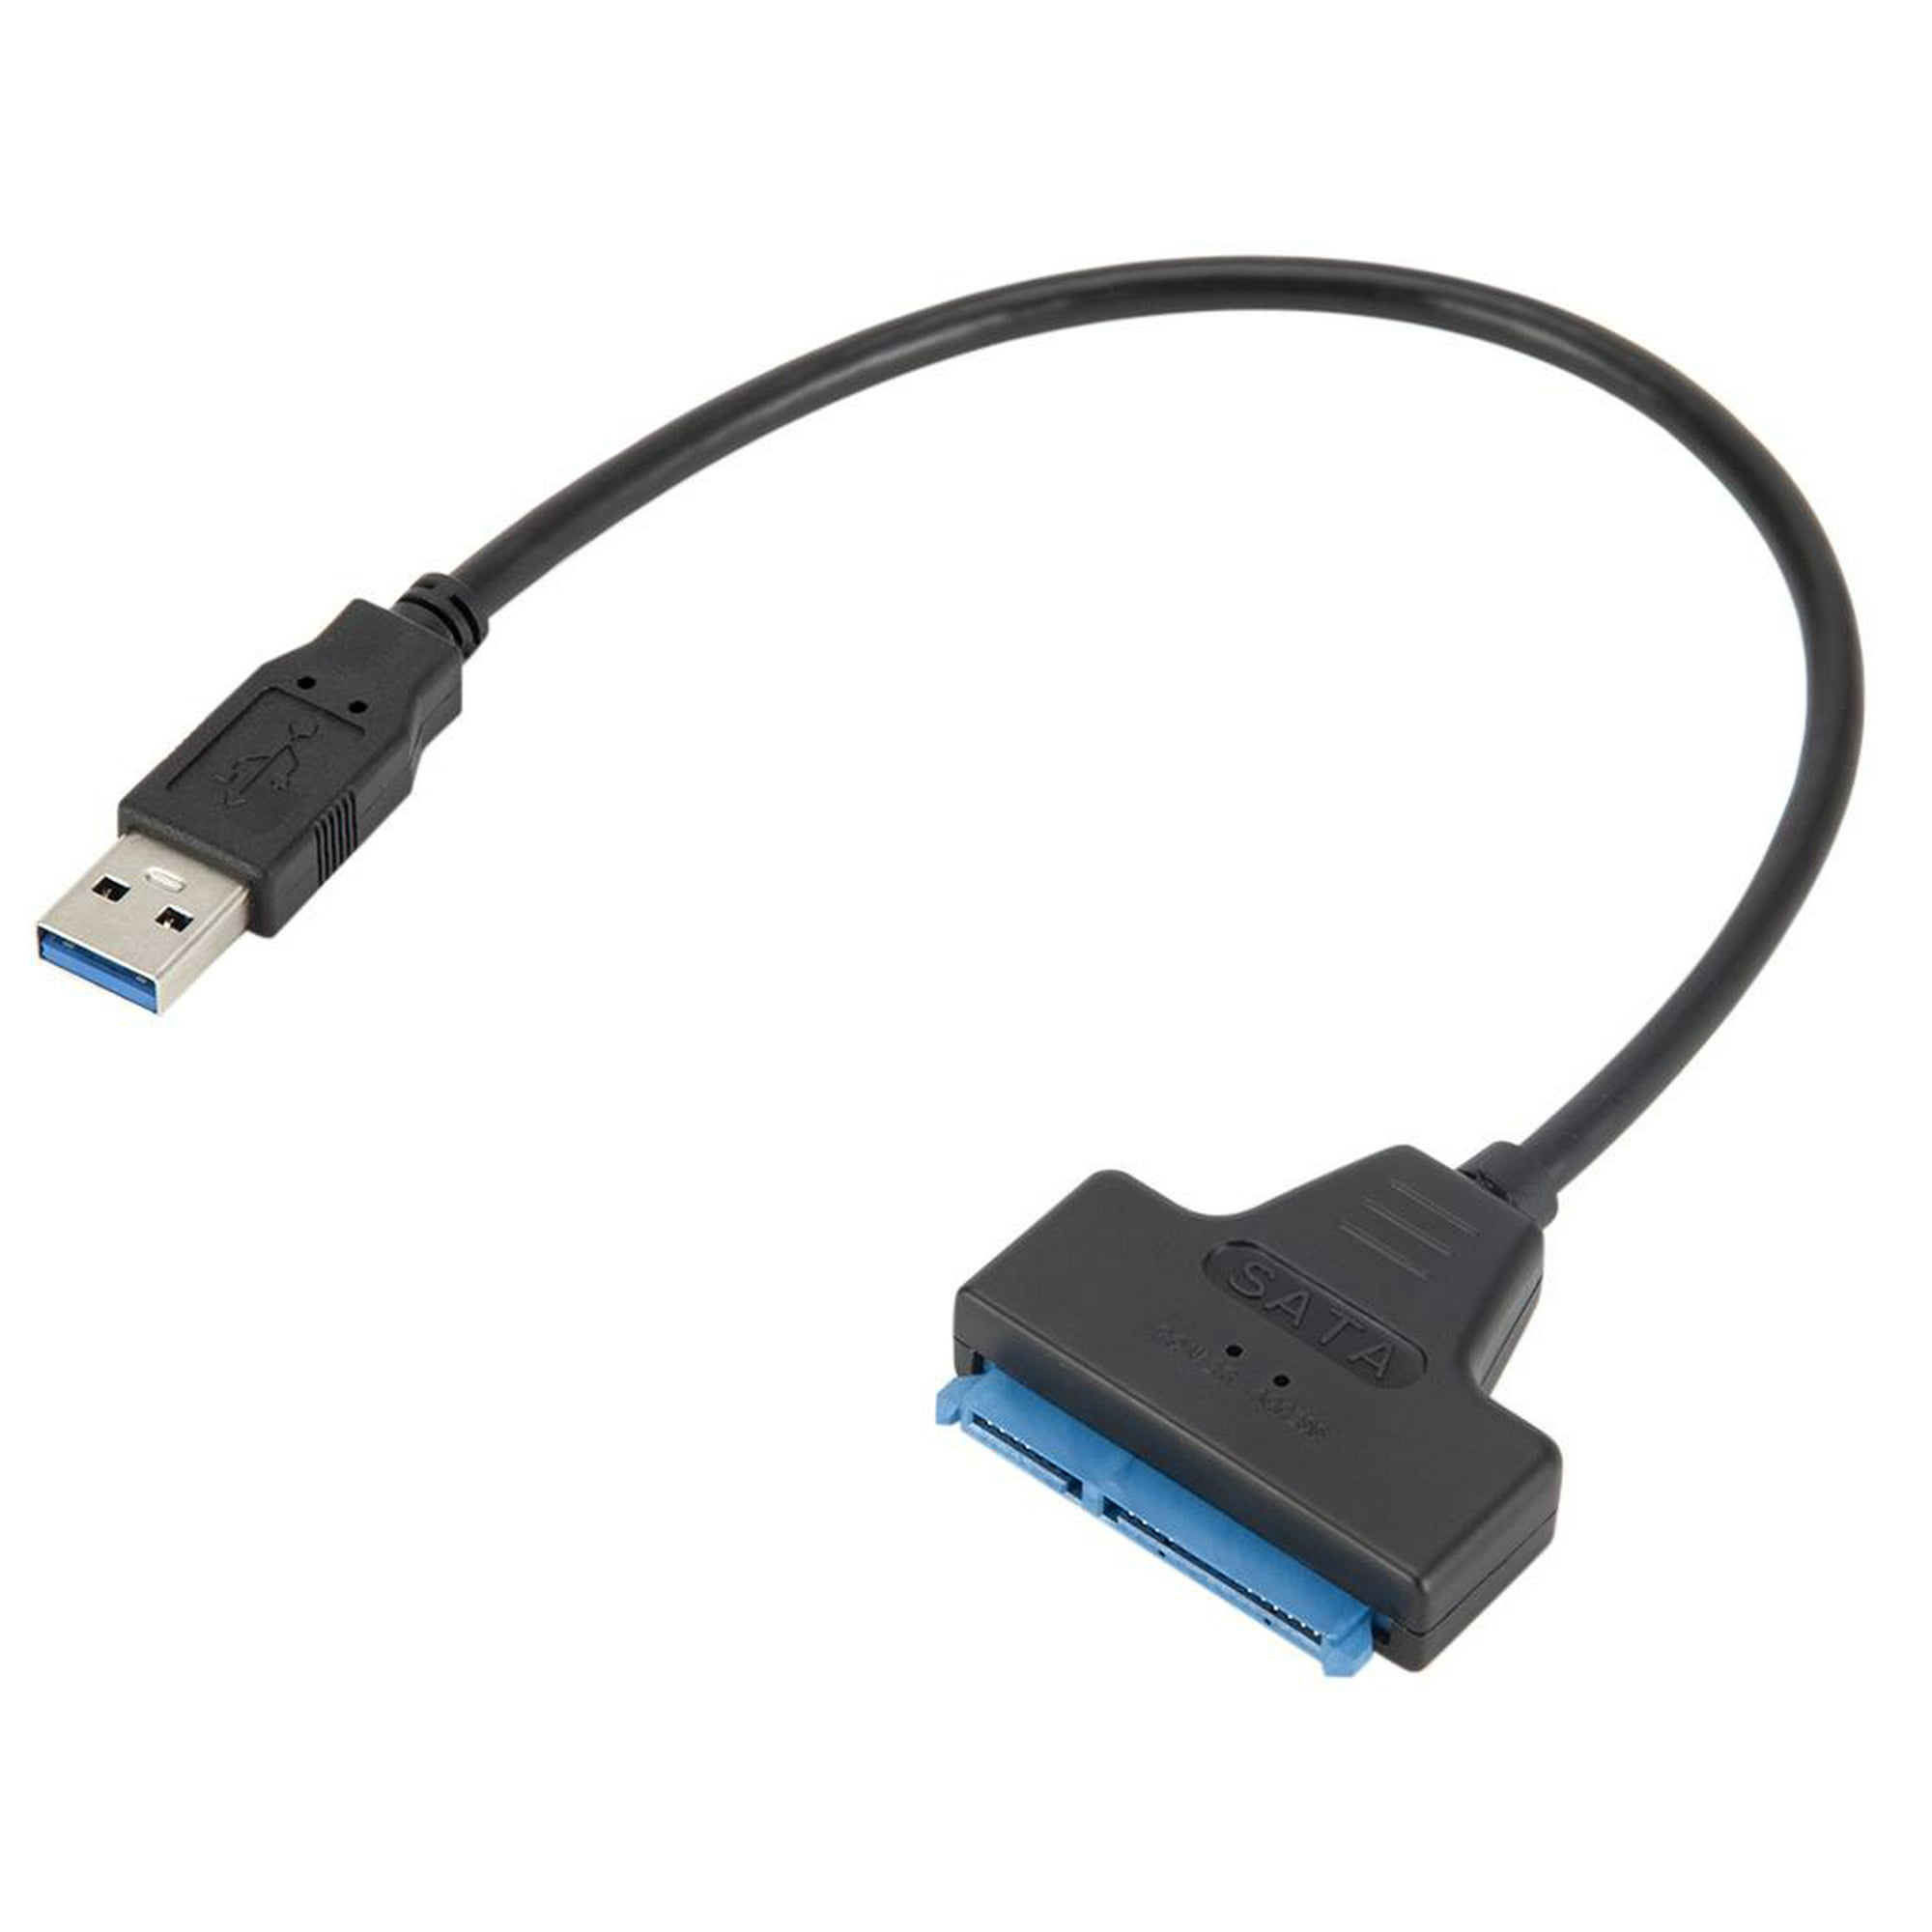 Cable de extensión USB 3.0 macho a hembra [negro] de 3 pies+ USB 3.0 a SATA  disco duro externo para disco duro externo de 2,5 o 3,5 pulgadas HDD, SSD